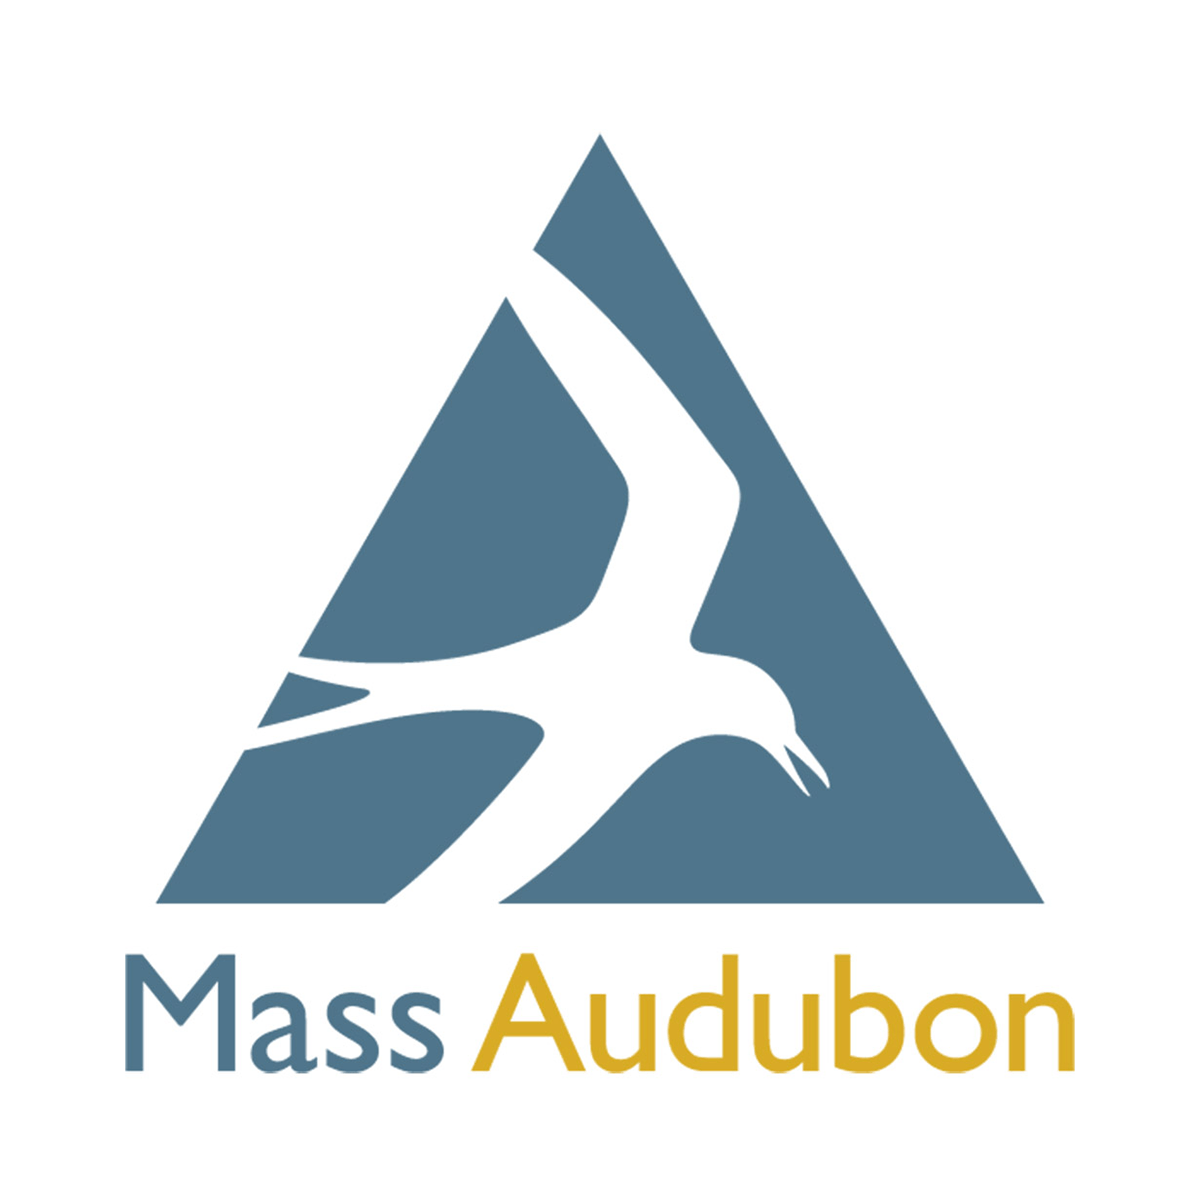 Mass Audubon logo_StackedOceanside Sunnyside_Erin Kelly_Resized.png